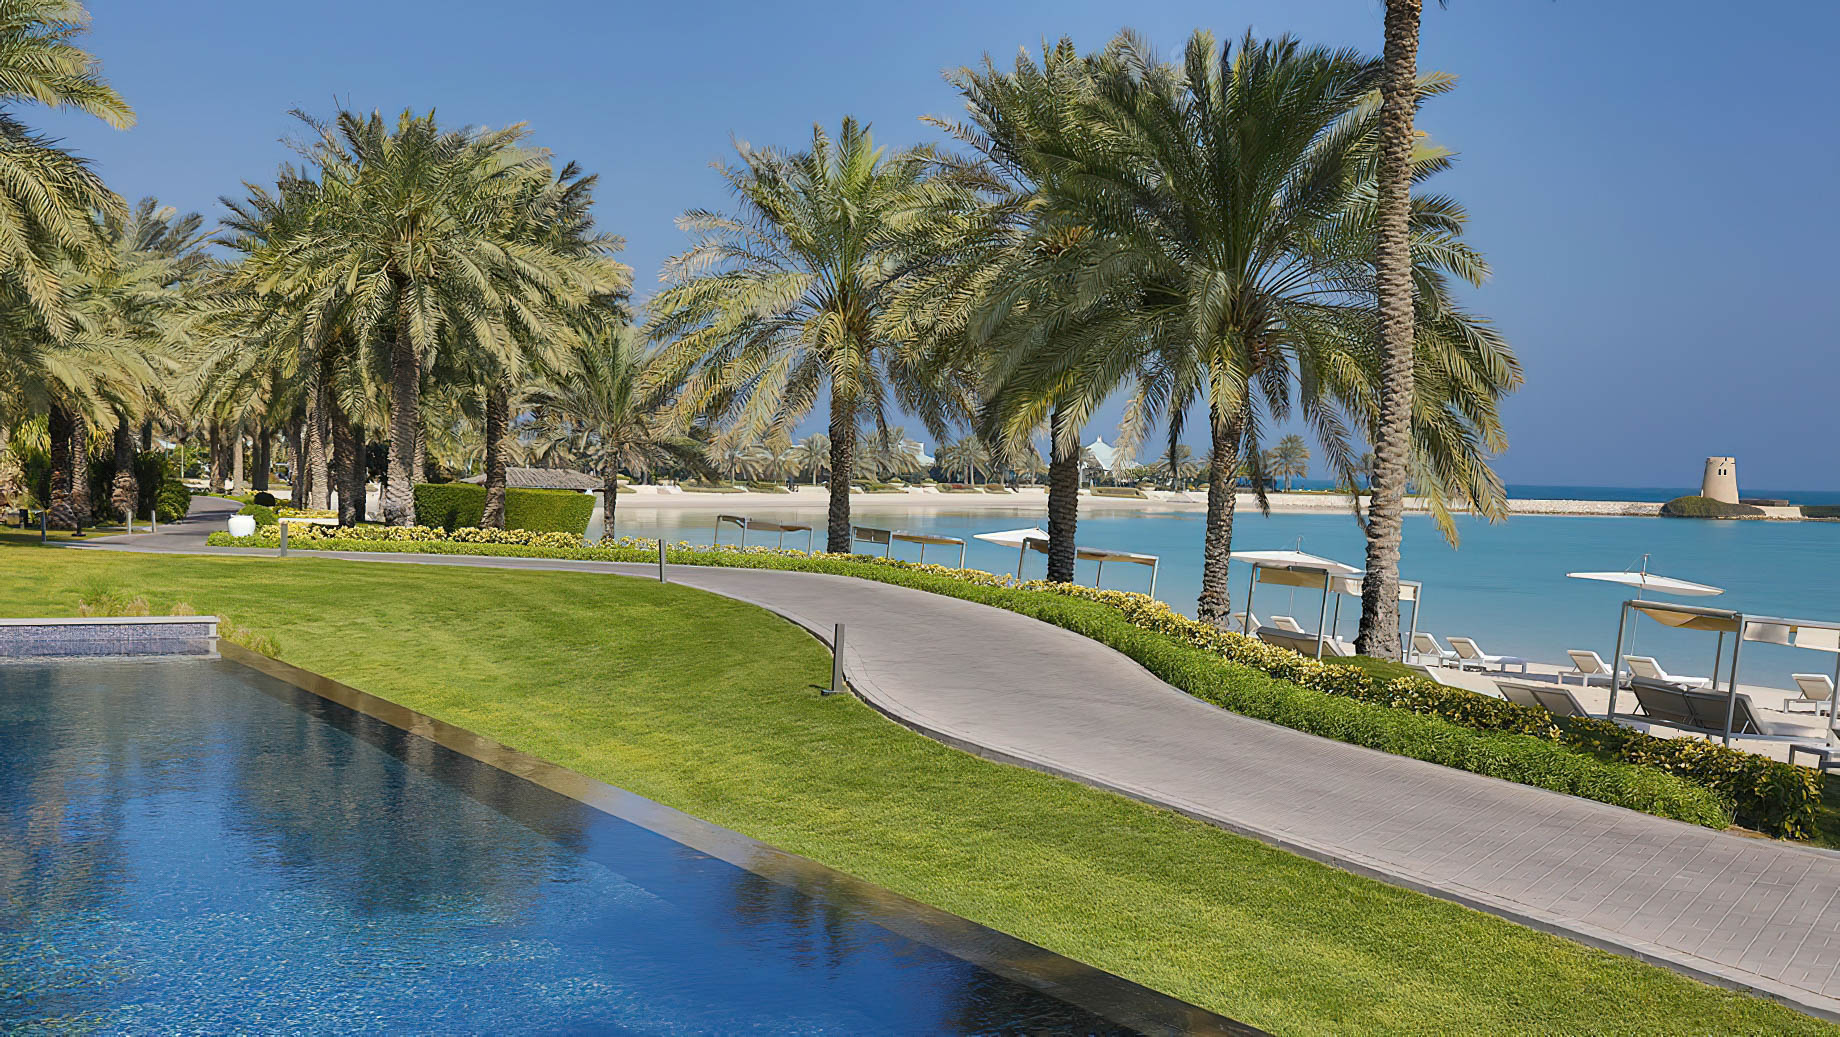 The Ritz-Carlton, Bahrain Resort Hotel - Manama, Bahrain - Private Beach View